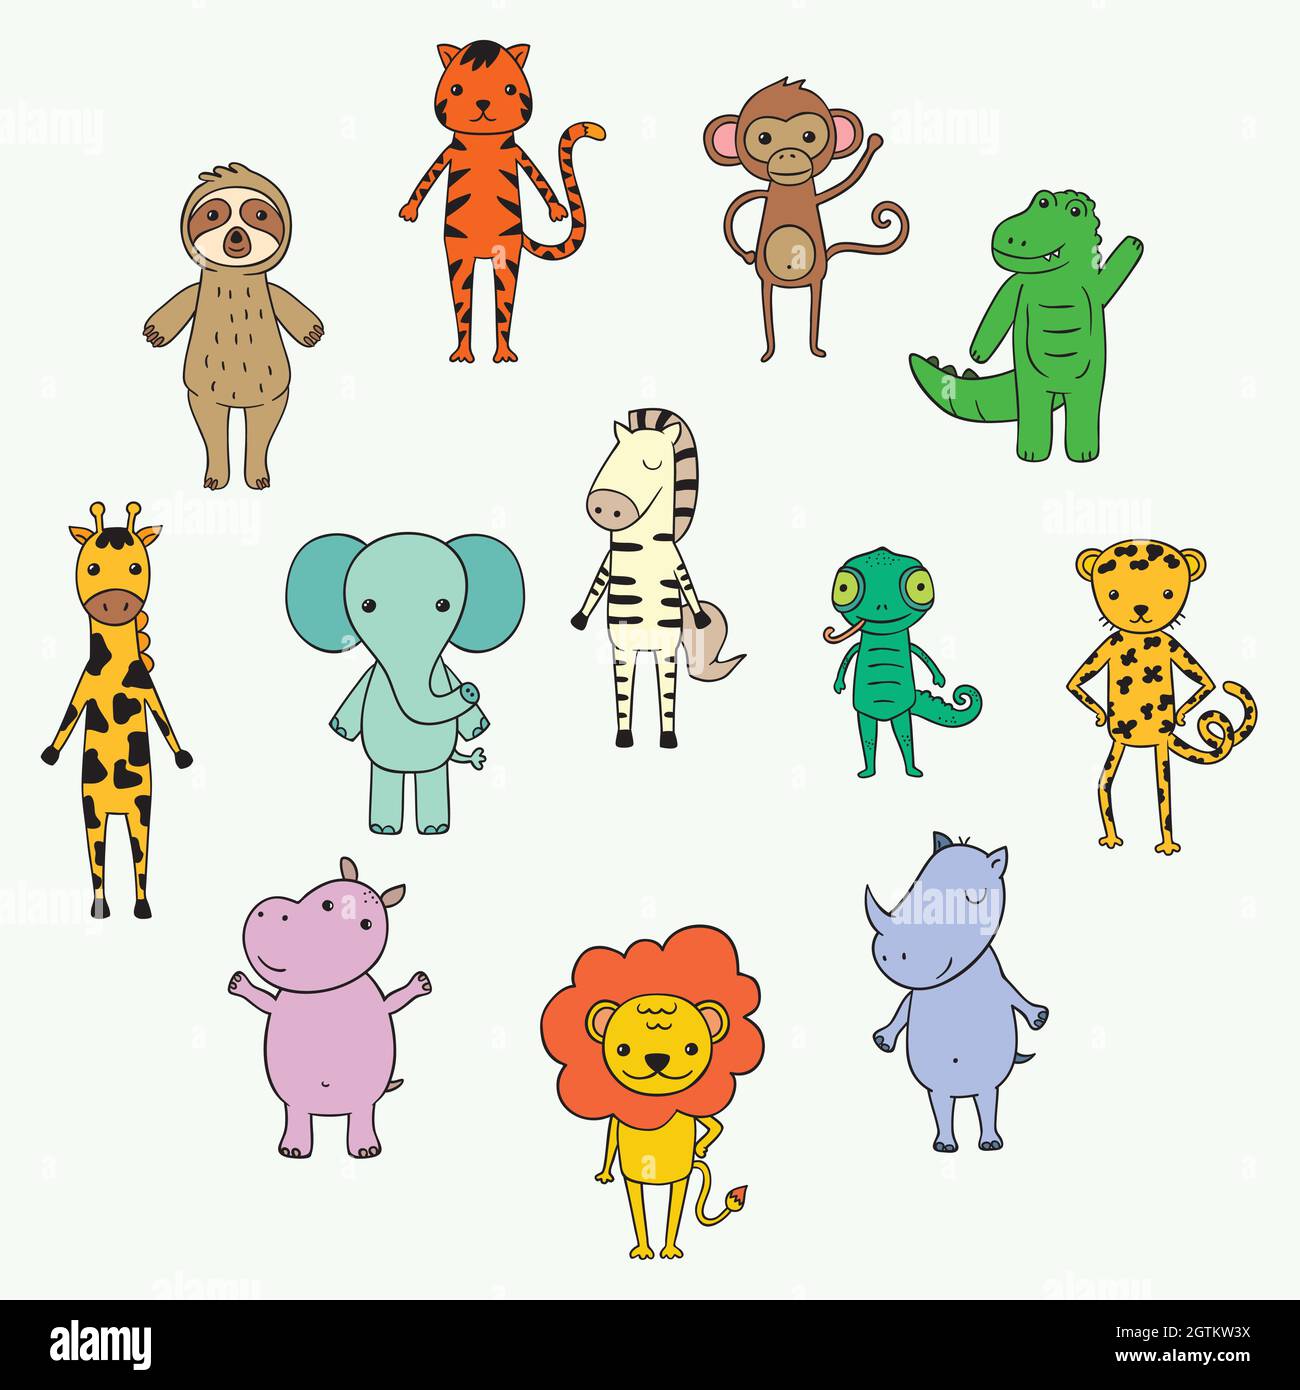 Animaux de la jungle et safari mignons. Personnages du zoo de dessins animés dessinés à la main. Éléphant, lion, cloth, singe, zèbre, girafe. Gribouillages colorés Illustration de Vecteur